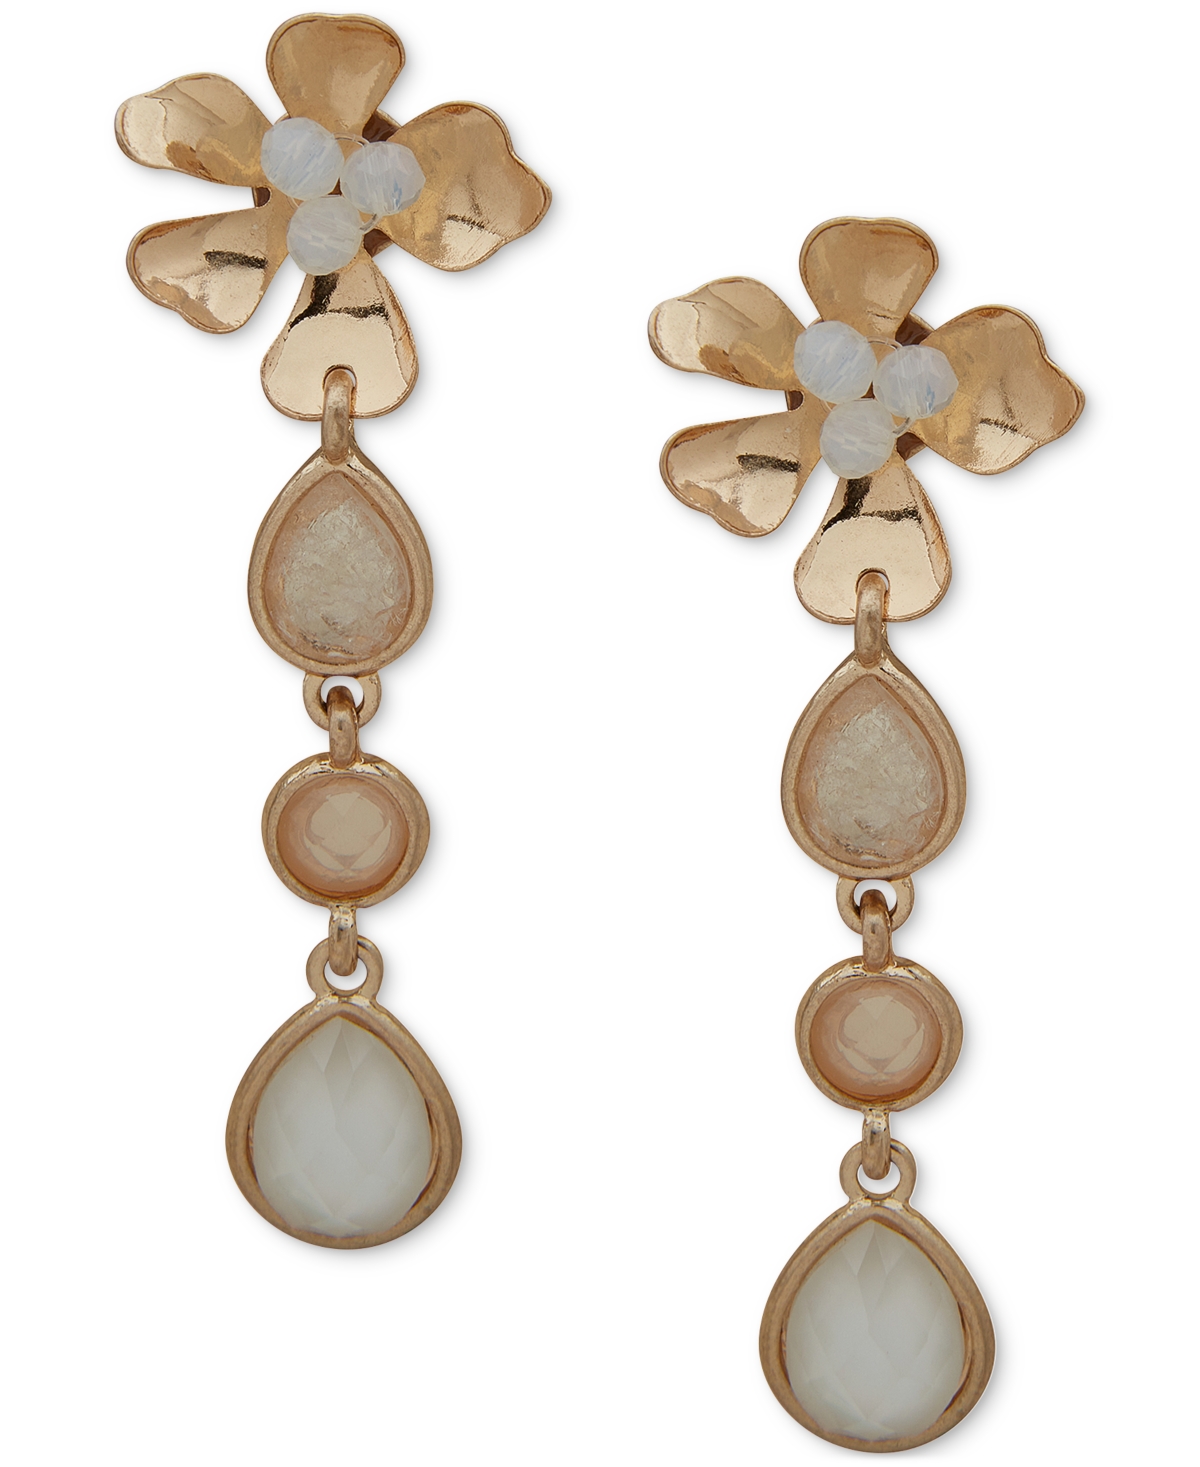 Gold-Tone Stone & Bead Flower Linear Drop Earrings - White